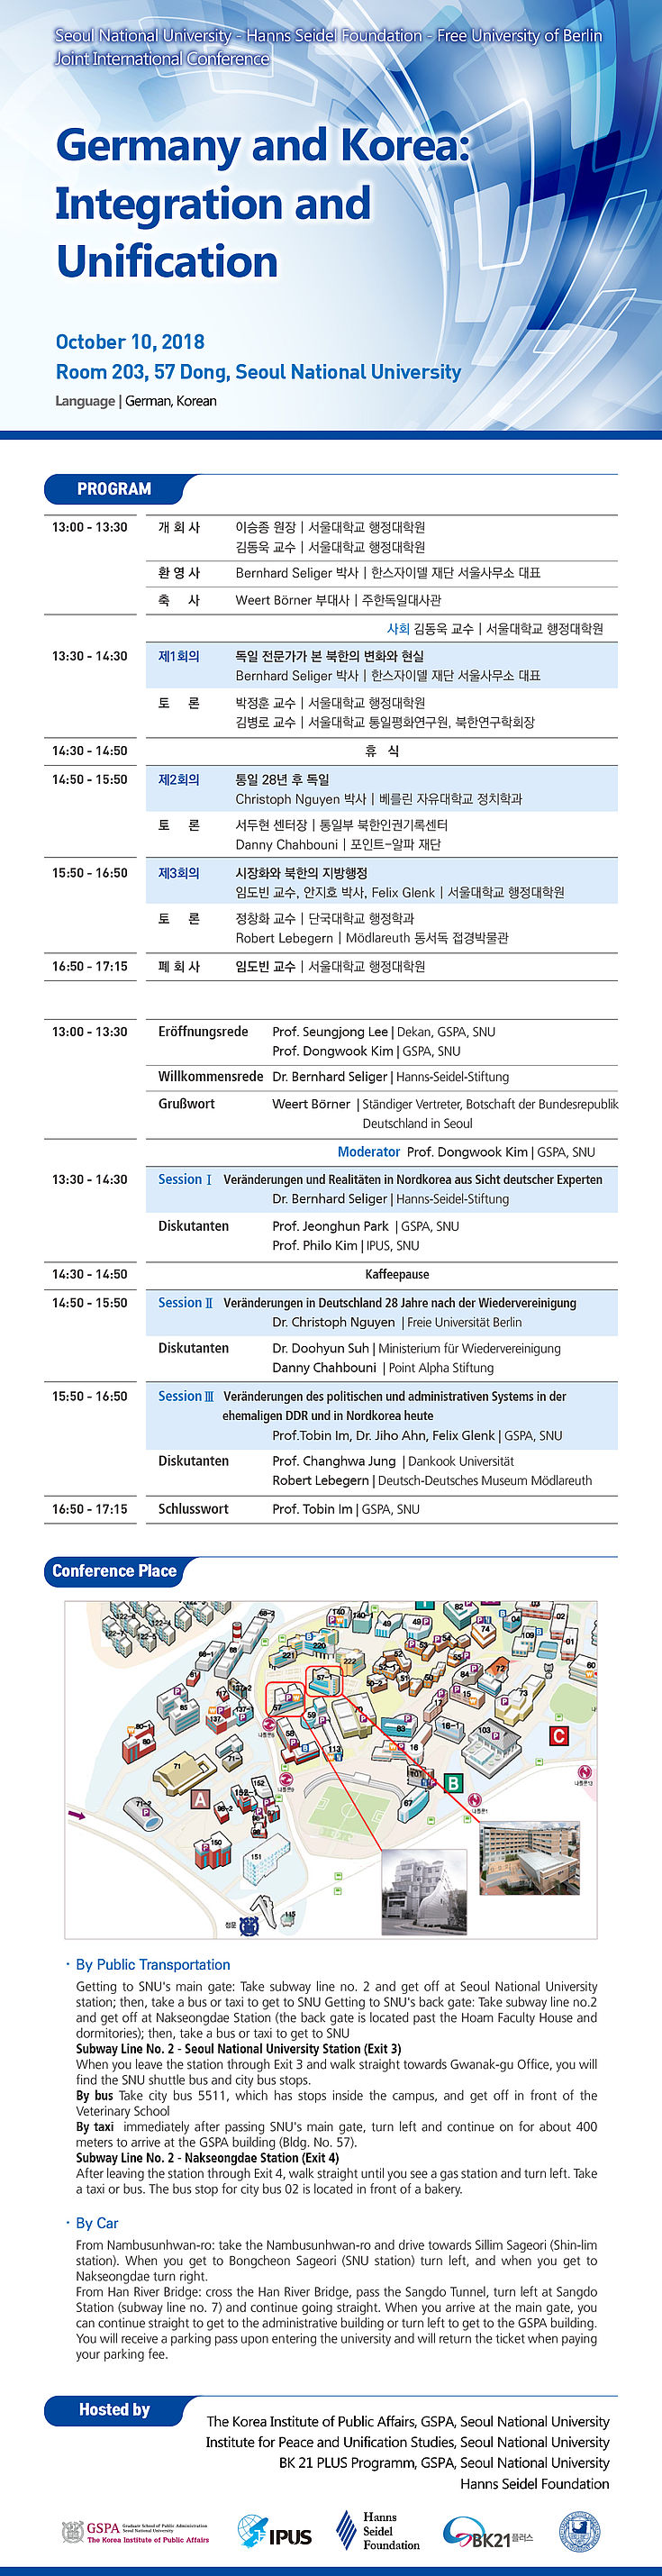 Programm der Konferenz “Germany and Korea: Integration and Unification” 